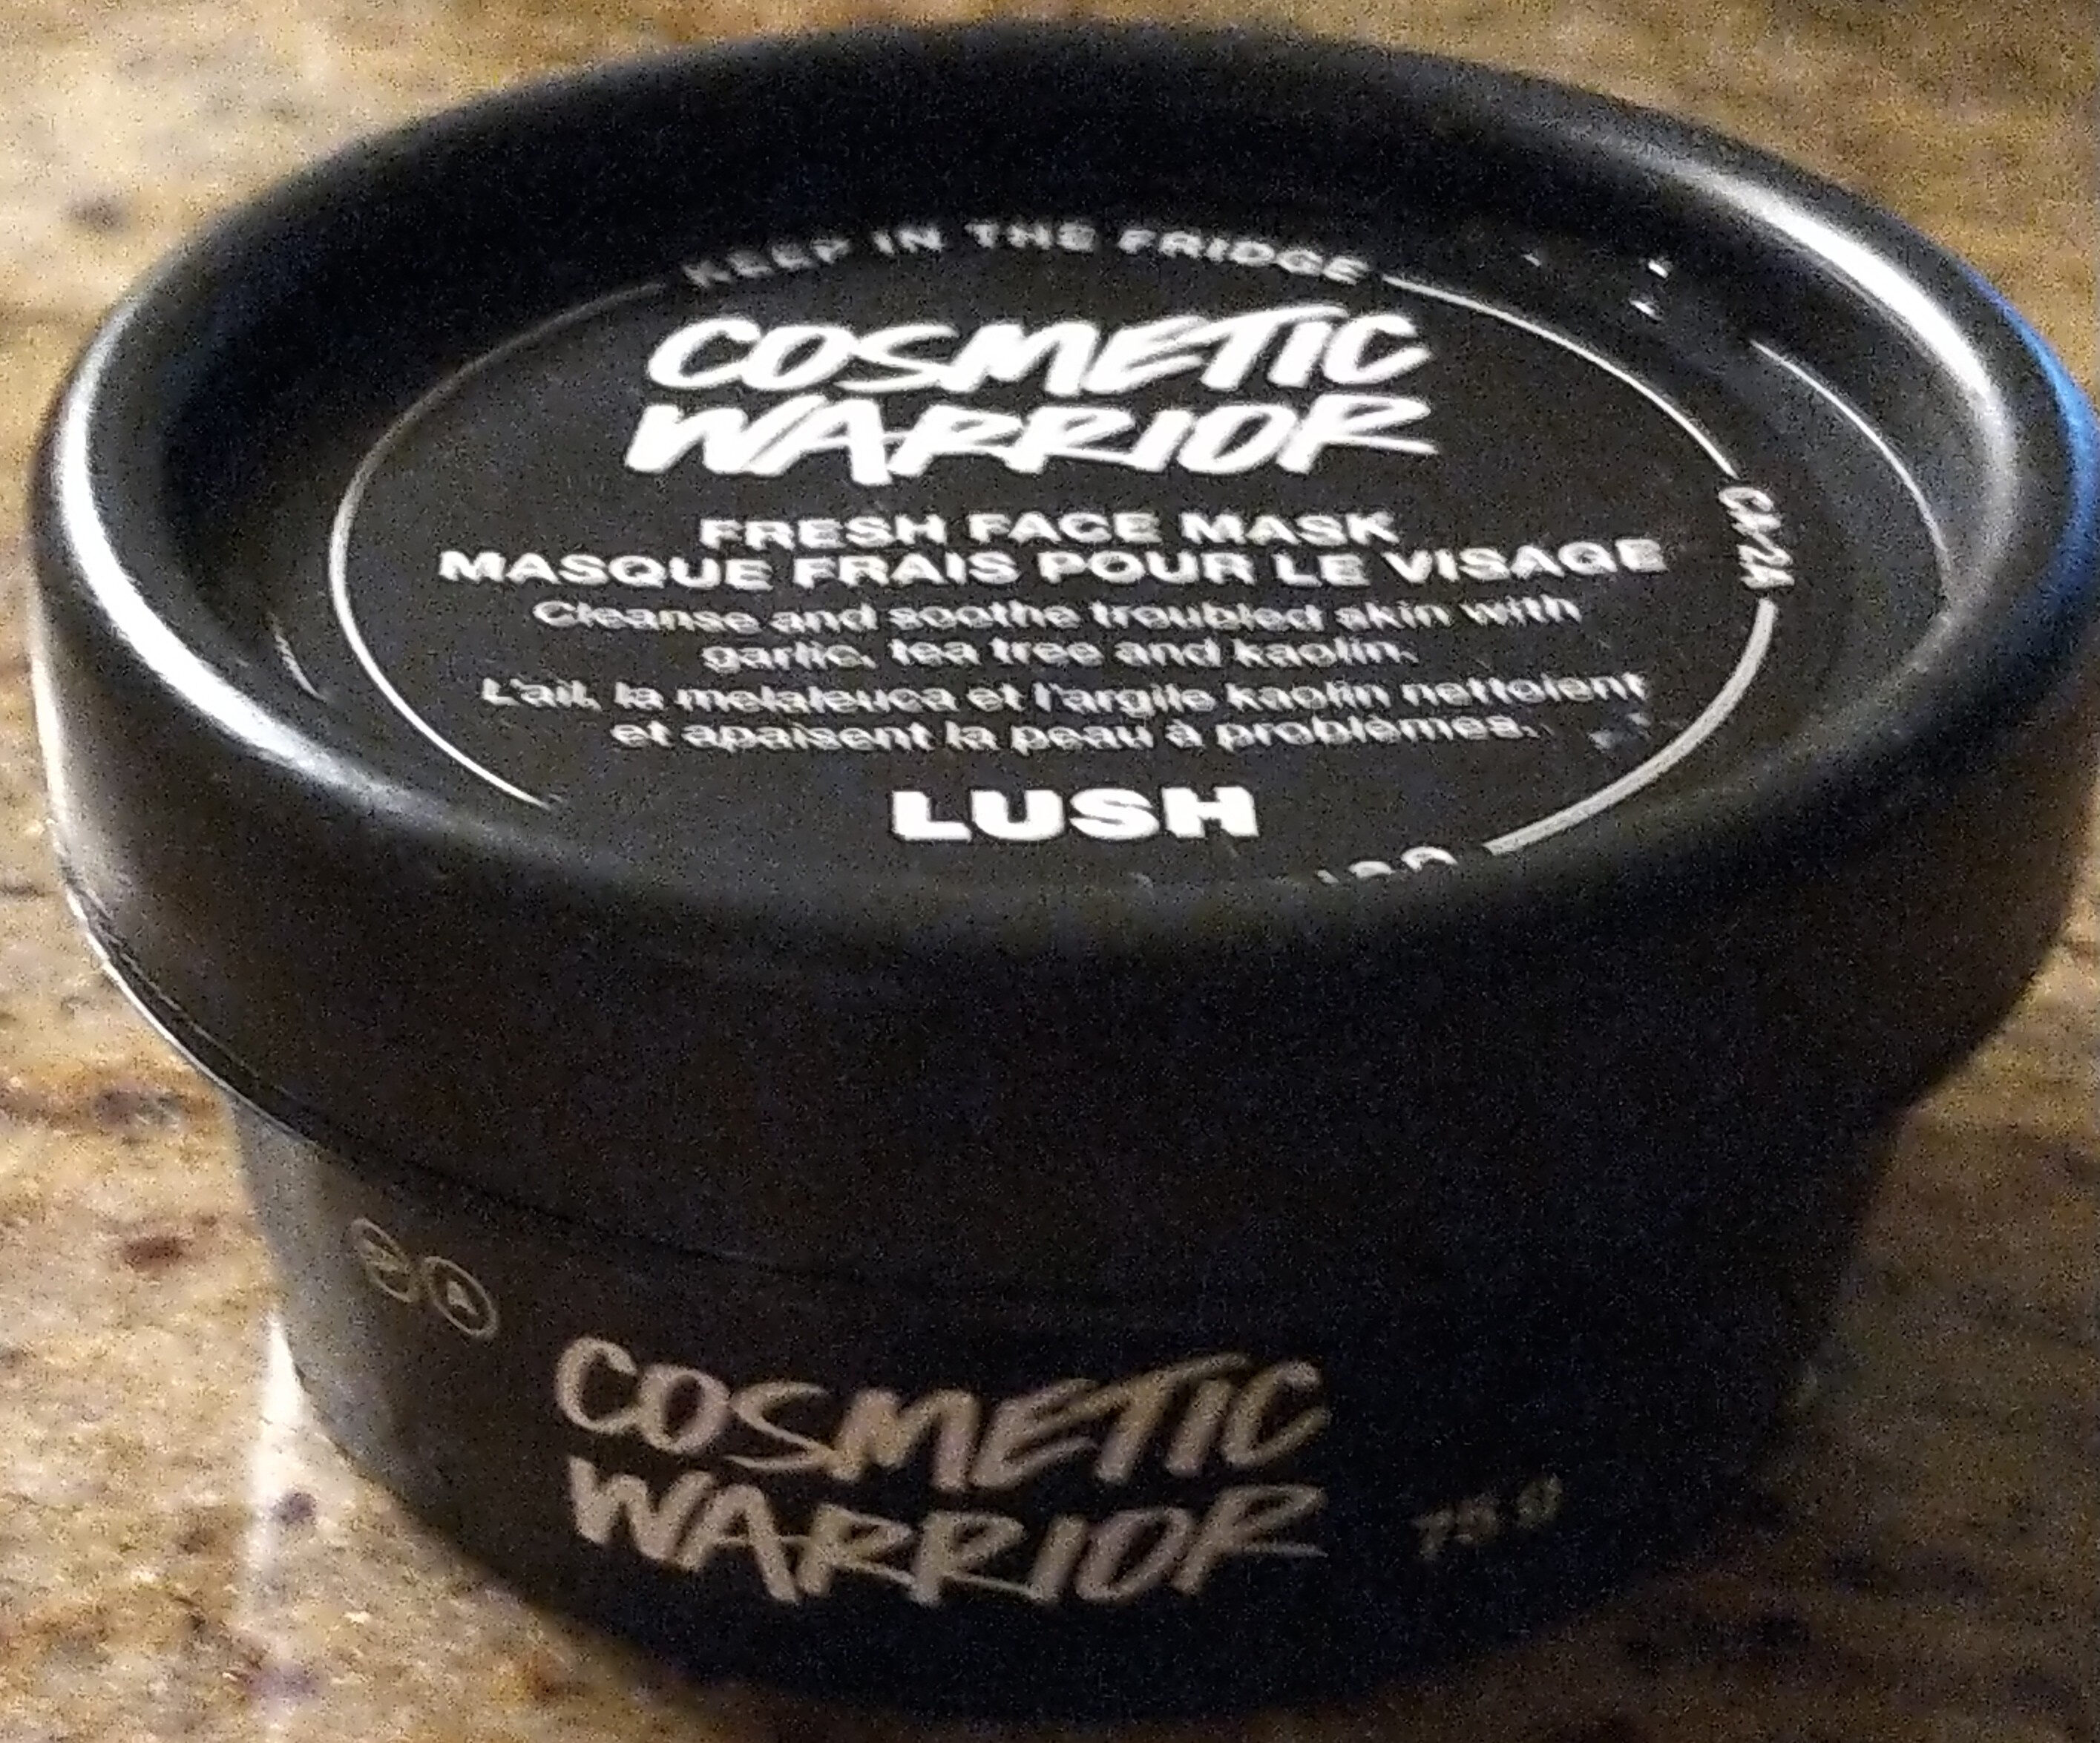 Cosmetic Warrior Fresh Face Mask - Produto - en